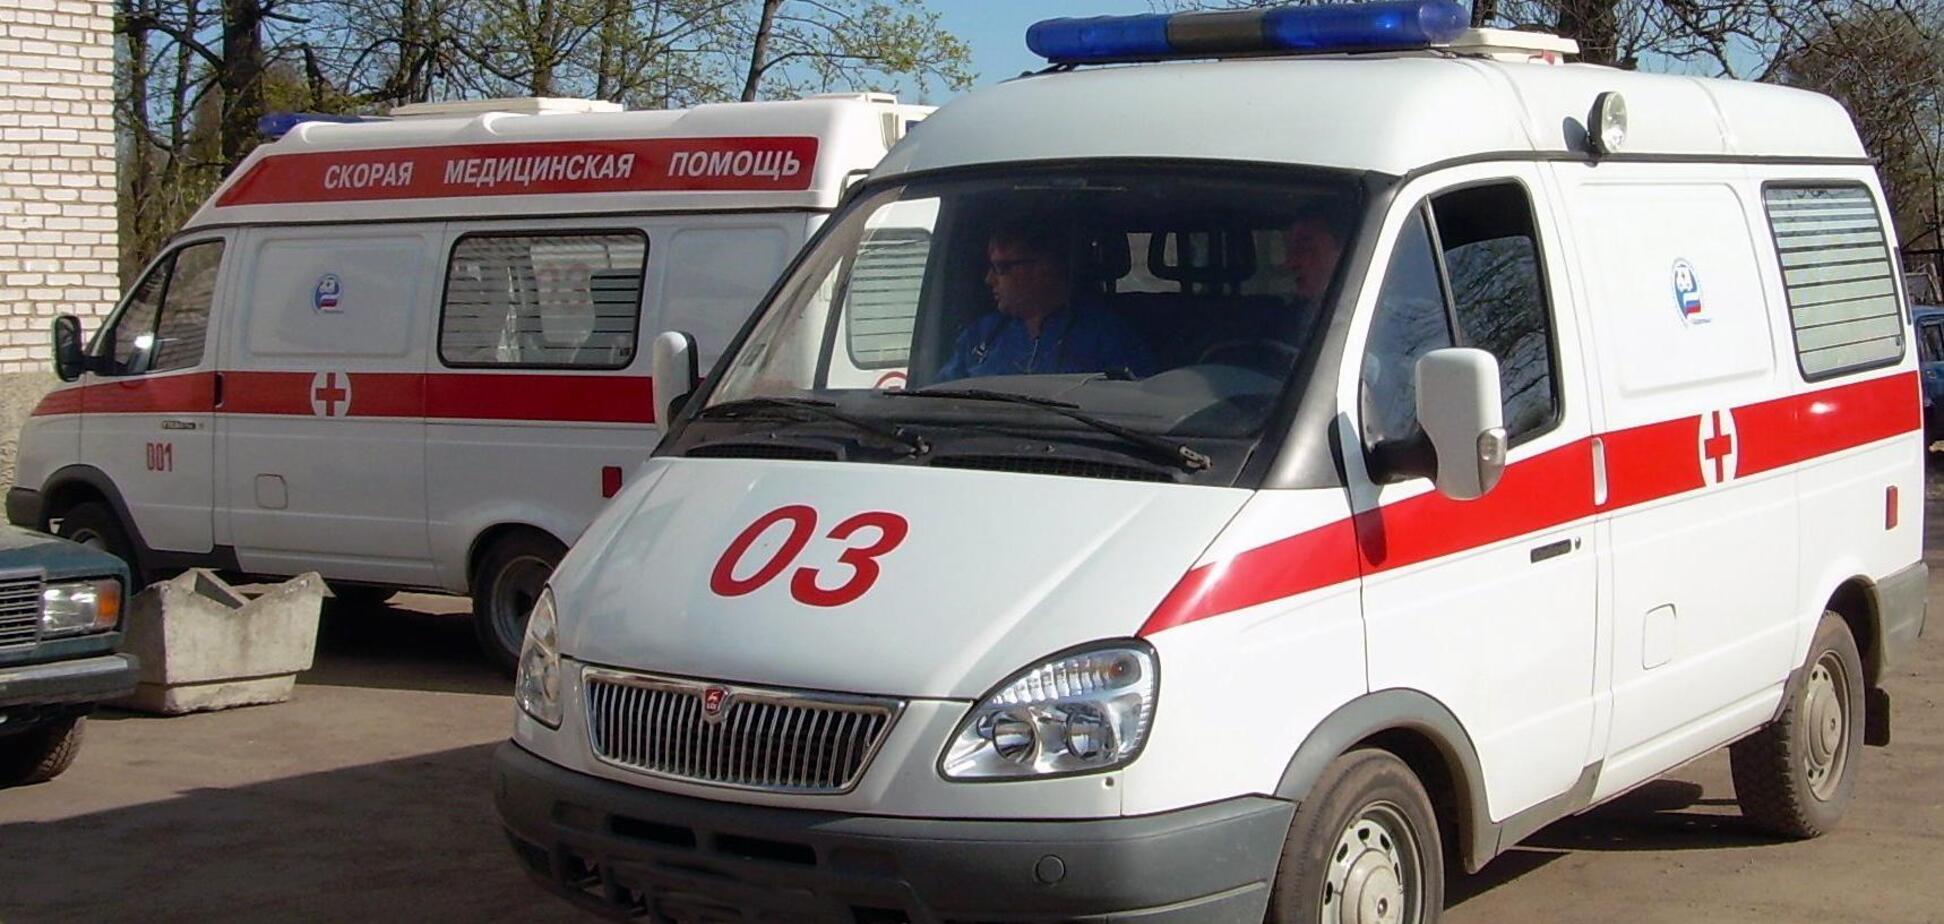 При критичному стані ви помрете: лікар 'швидкої' розповів про жахи медицини в Україні